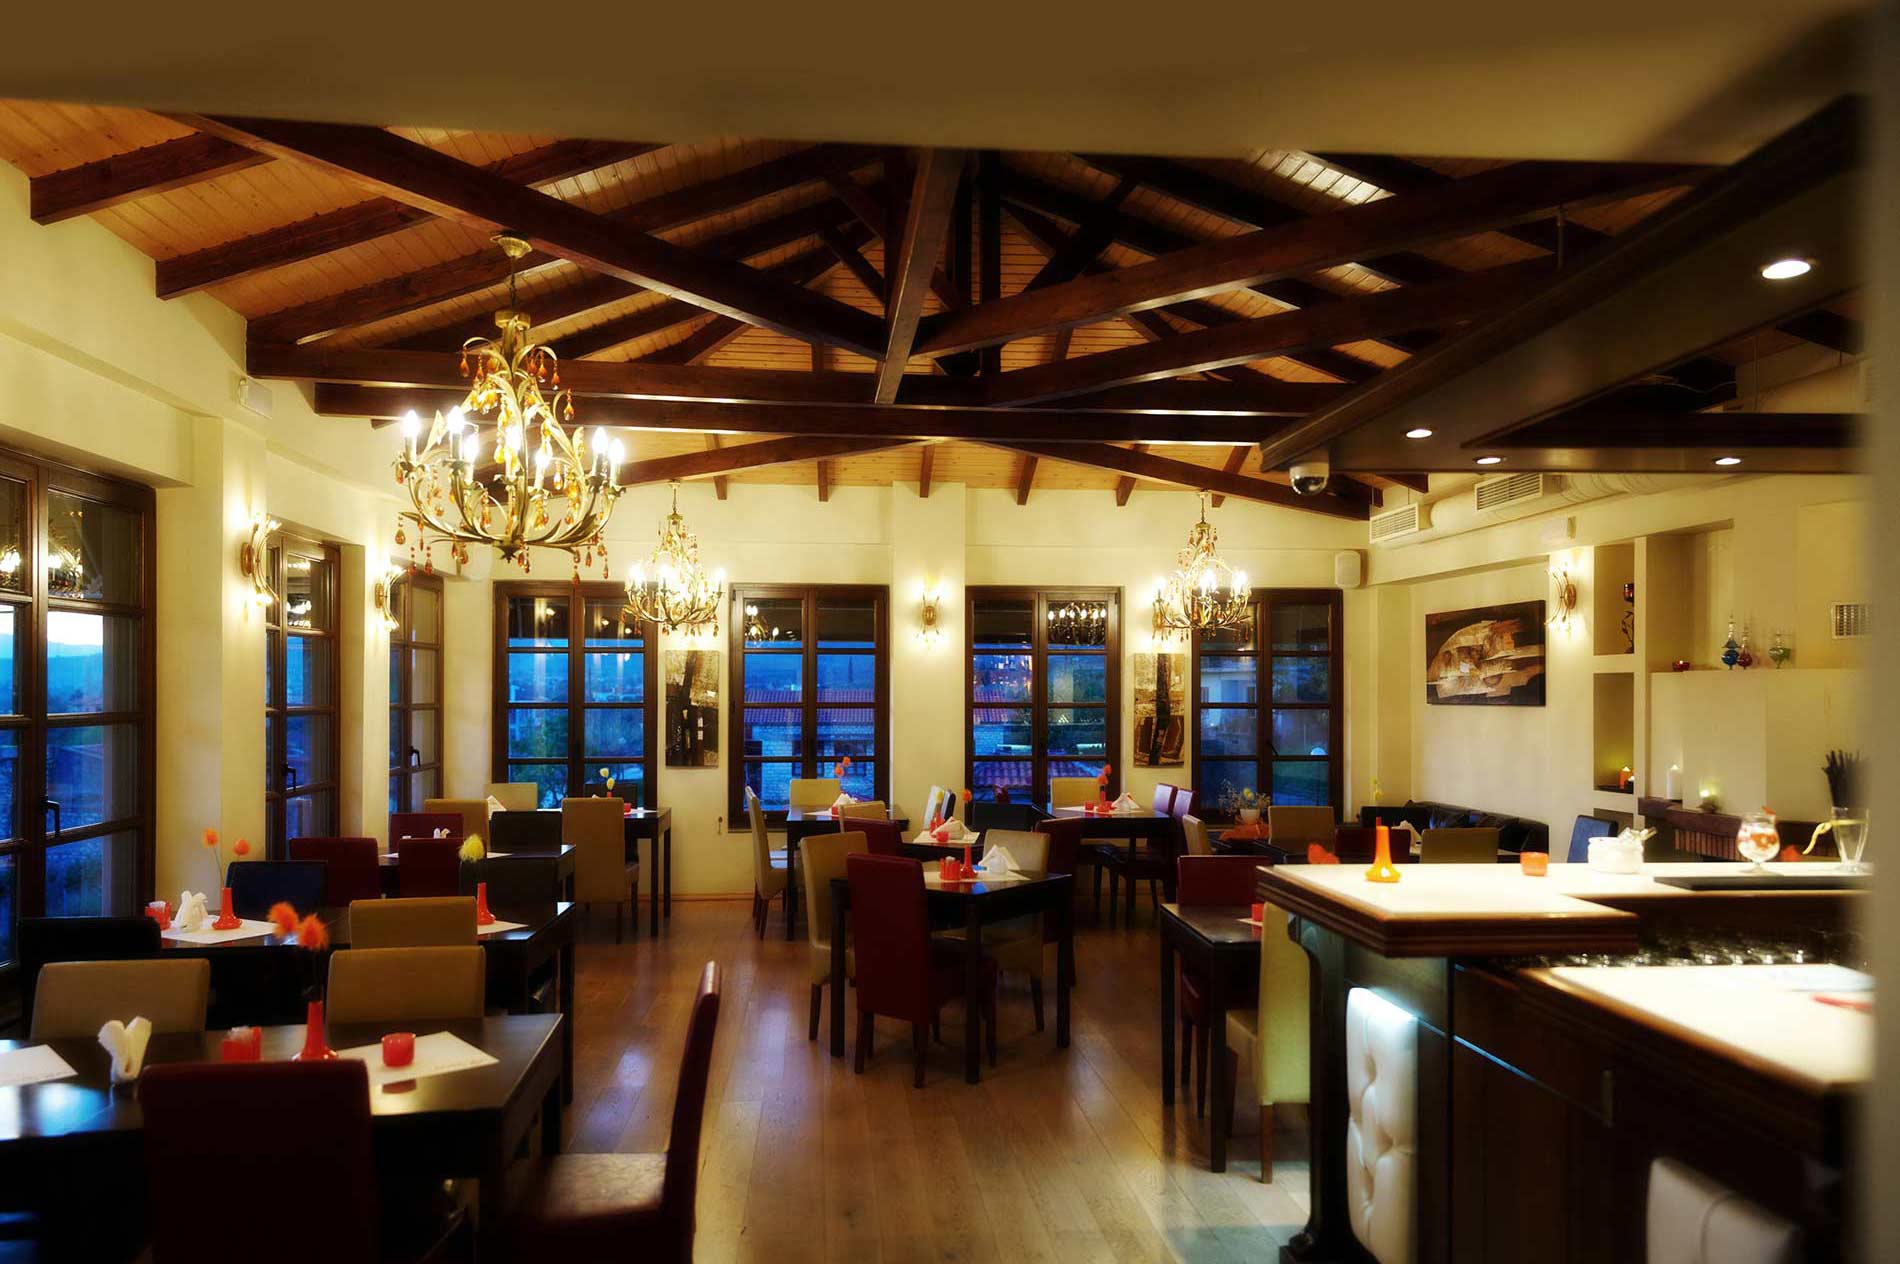 Eστιατόριο Μπαχάρι, Βλαχέρνα Άρτας, Με φιλικό και μοντέρνο, άνετο και κομψό περιβάλλον